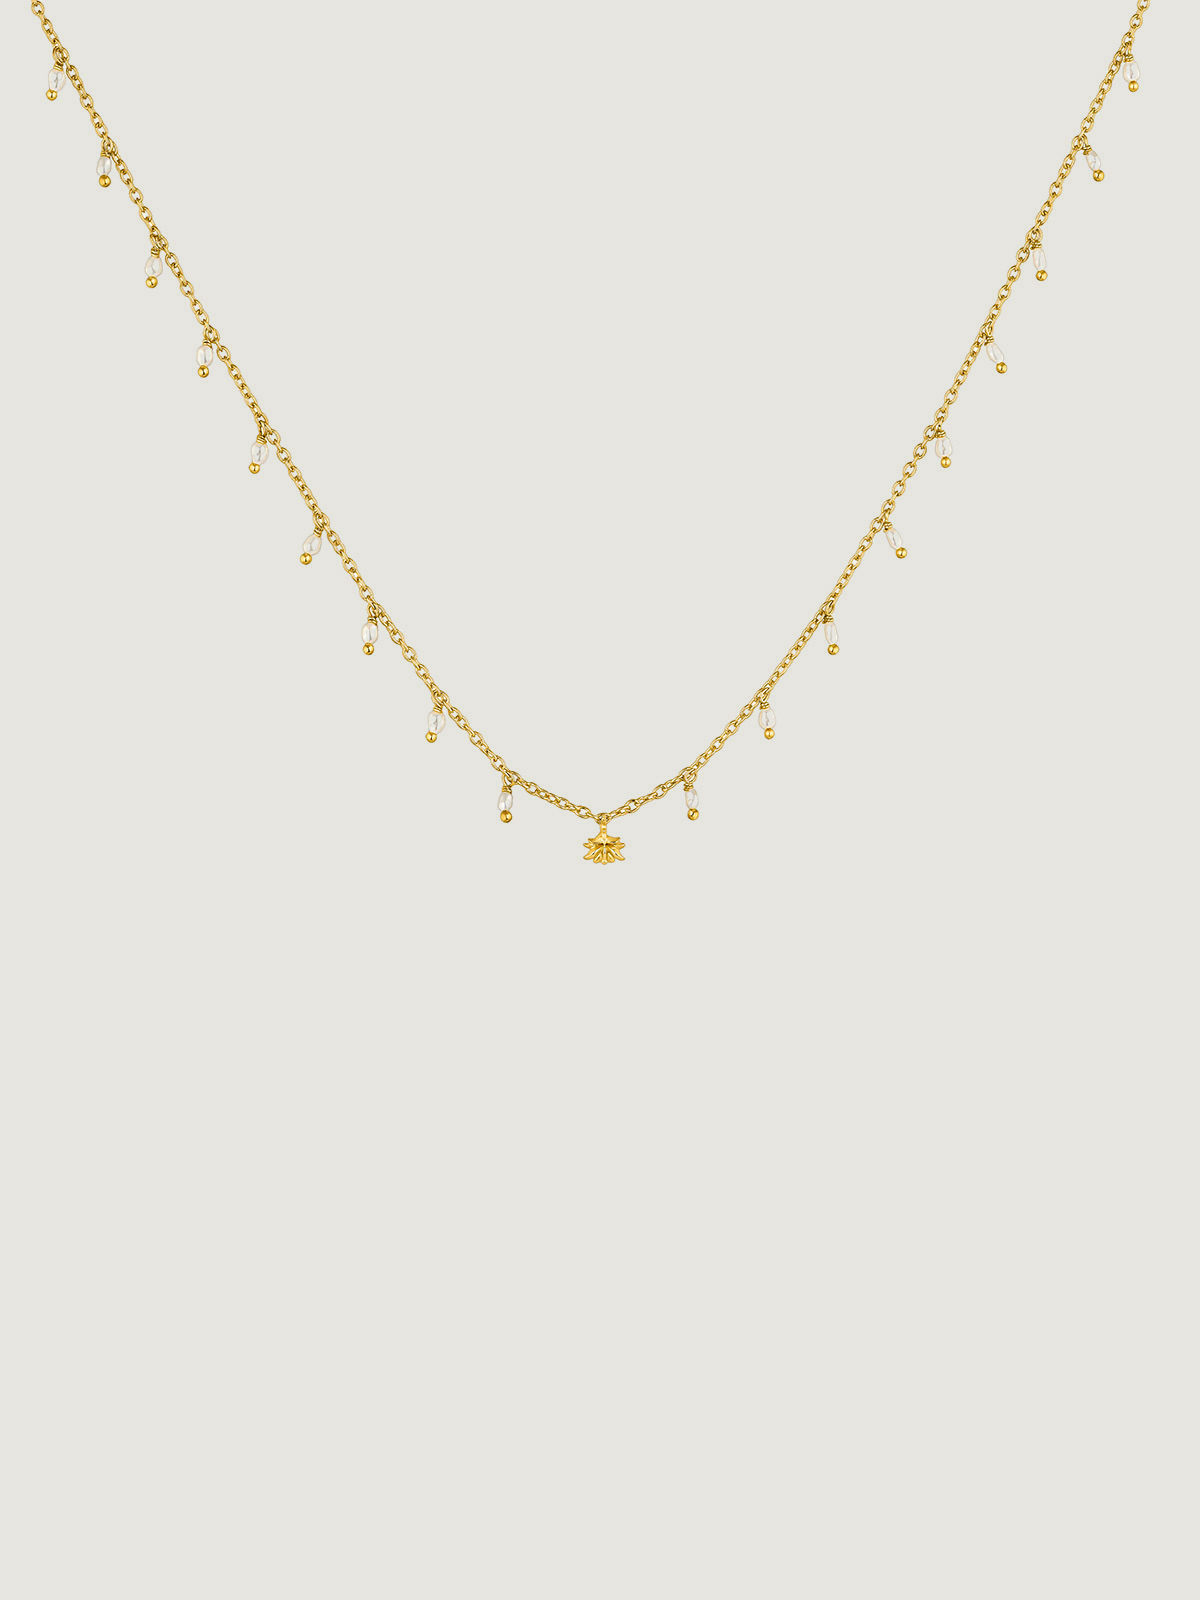 Collar de plata 925 bañada en oro amarillo de 18K con perlas de río y flor de loto